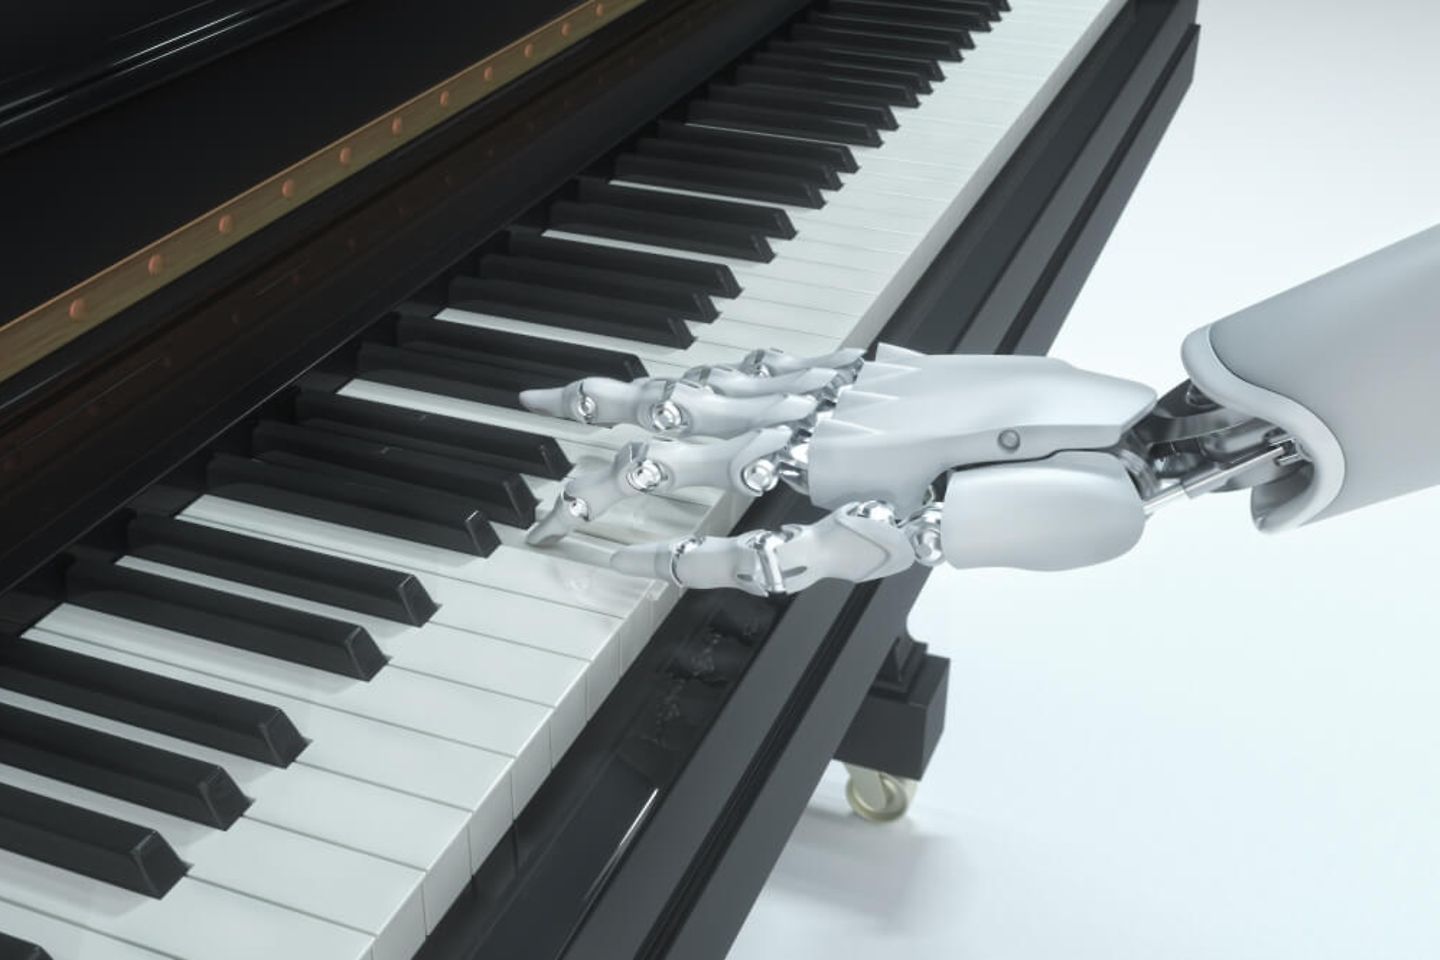 Roboterhand auf der Klaviertastatur